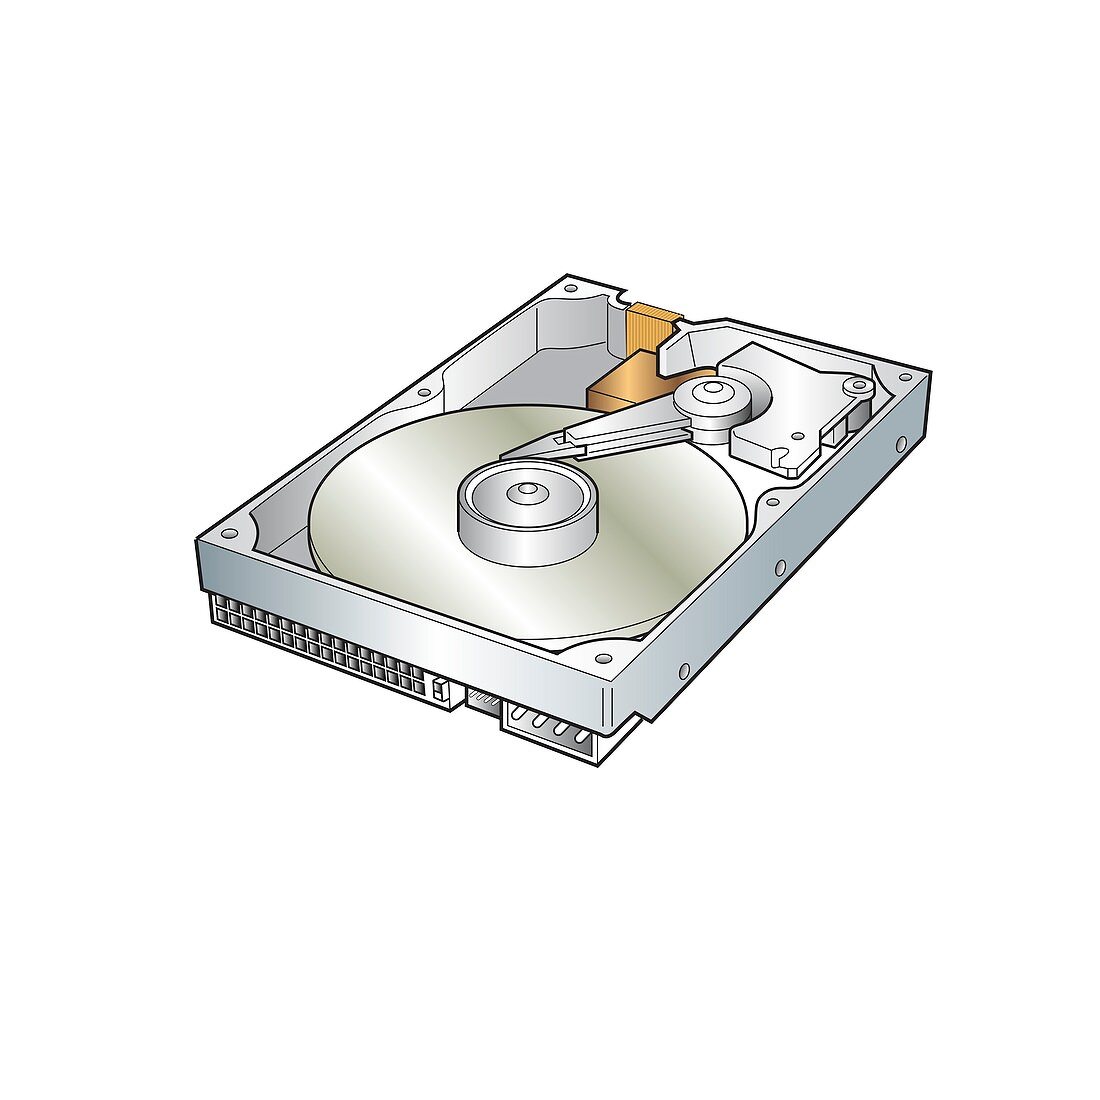 Hard disk drive, illustration